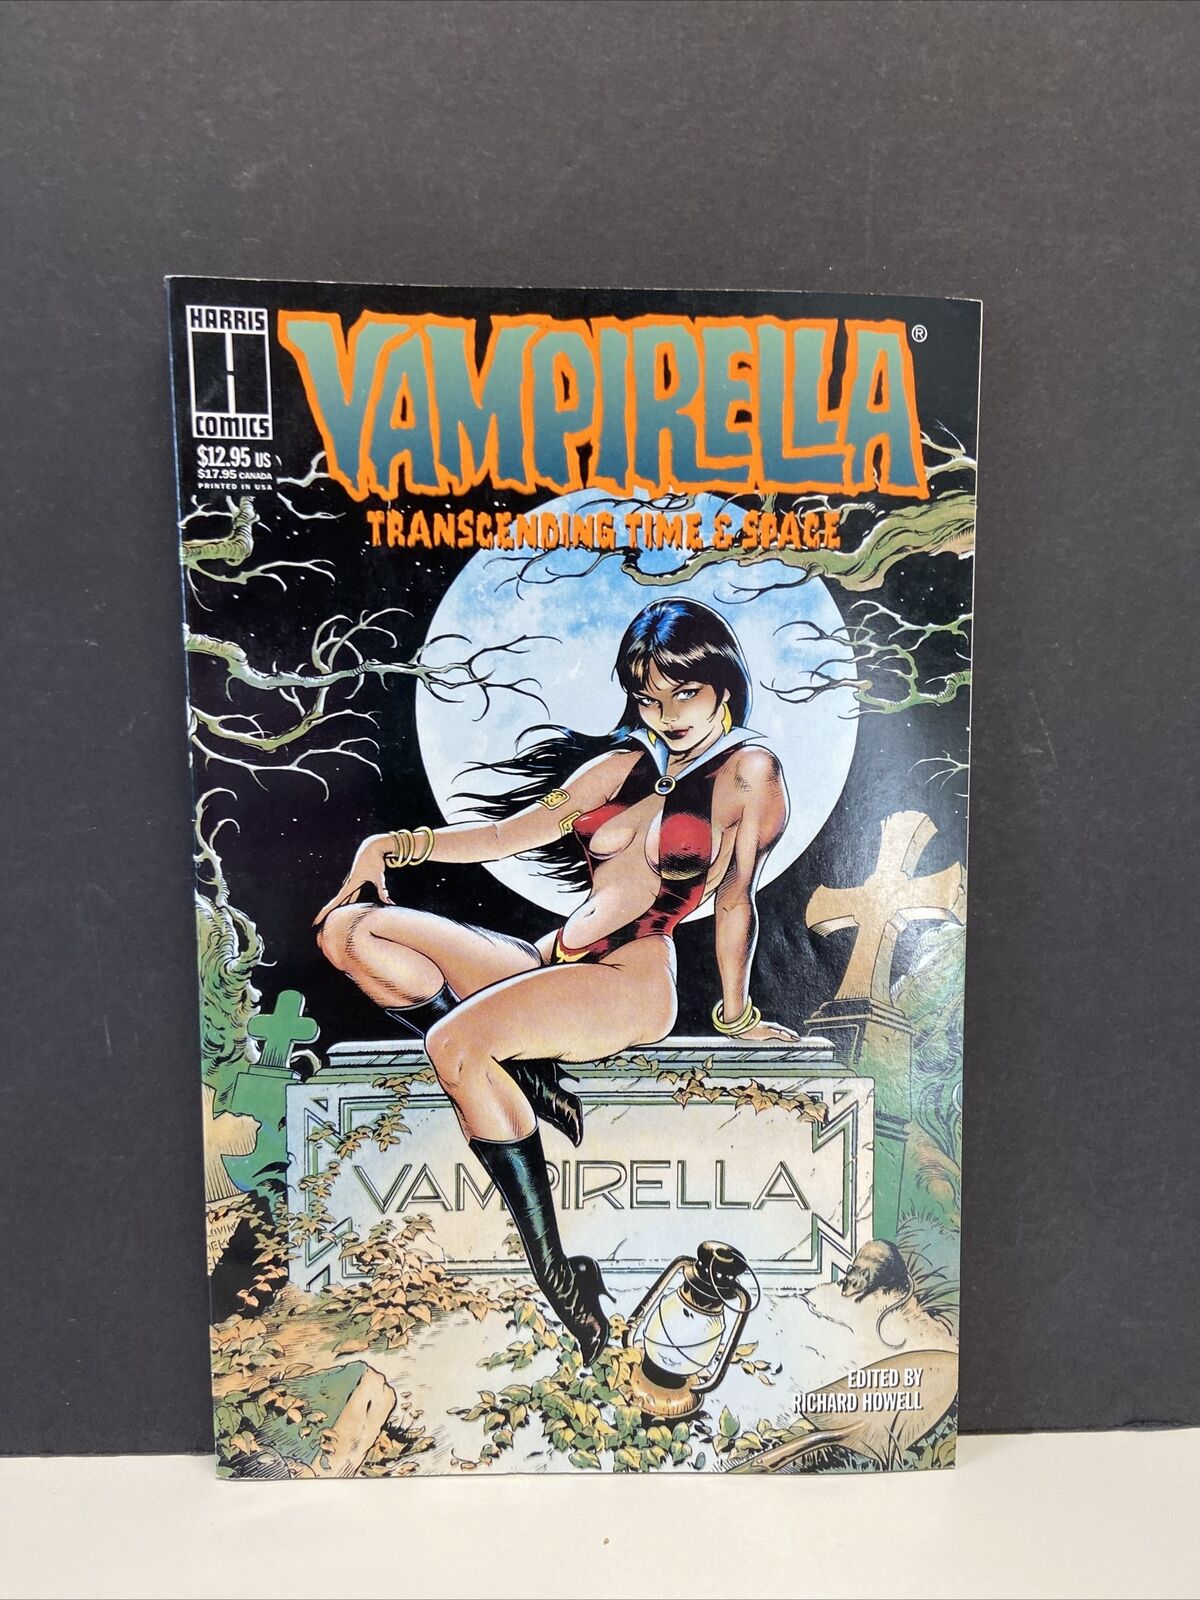 VAMPIRELLA: TRANSCENDING TIME & SPACE # 1 (HARRIS COMICS, JAN 1995)